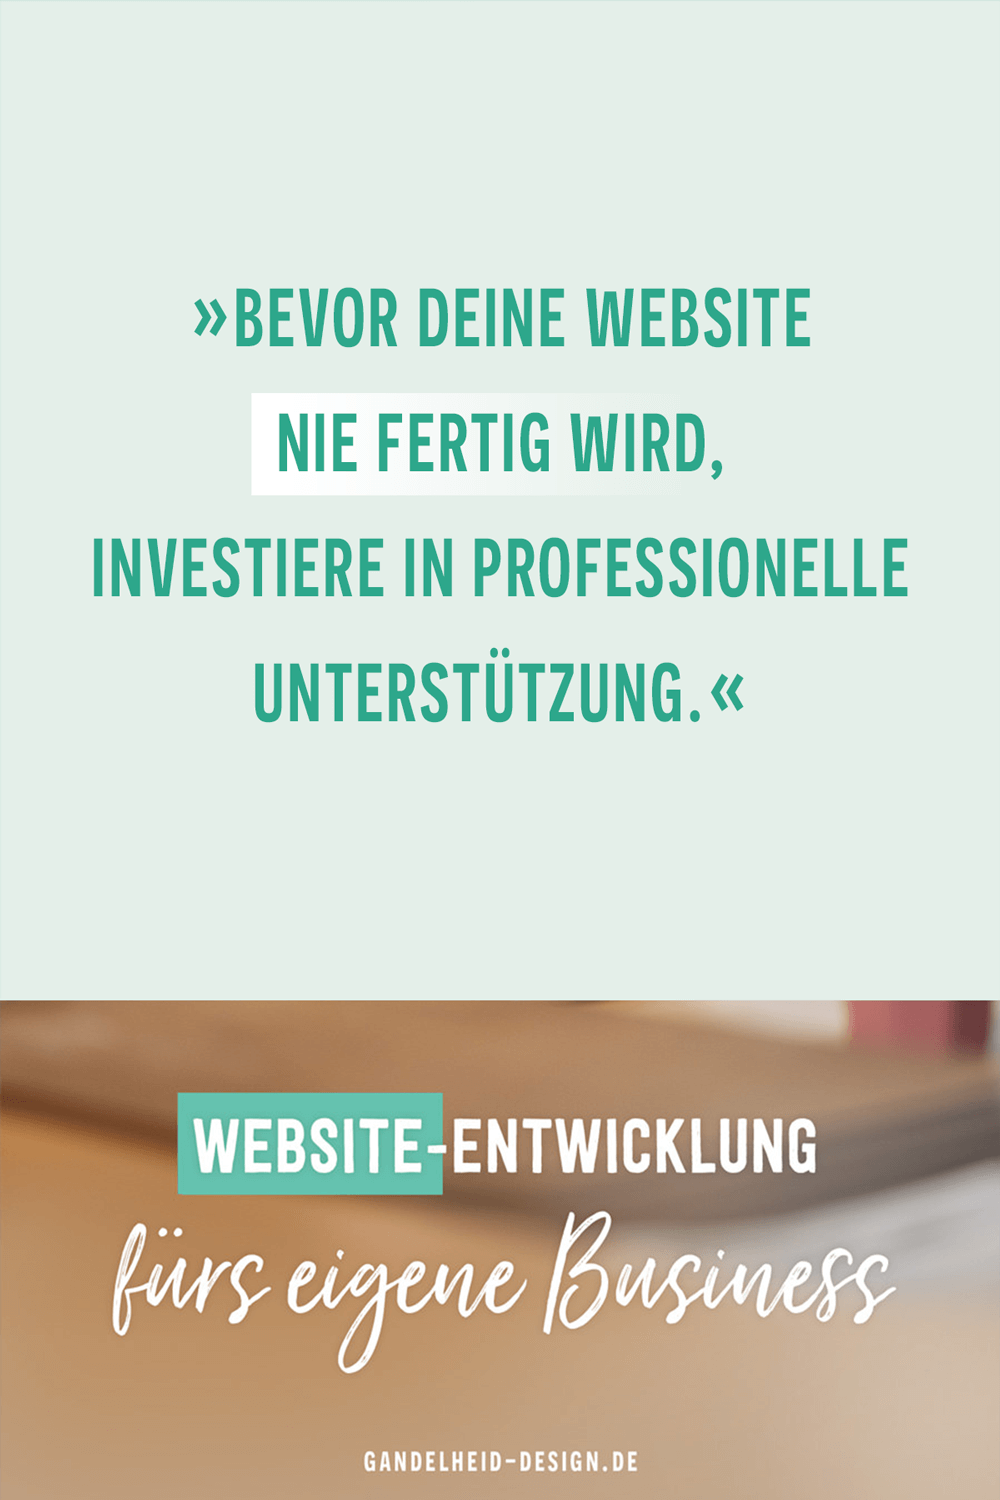 Bevor deine Website nie fertig wird, investier in professionelle Unterstützung.